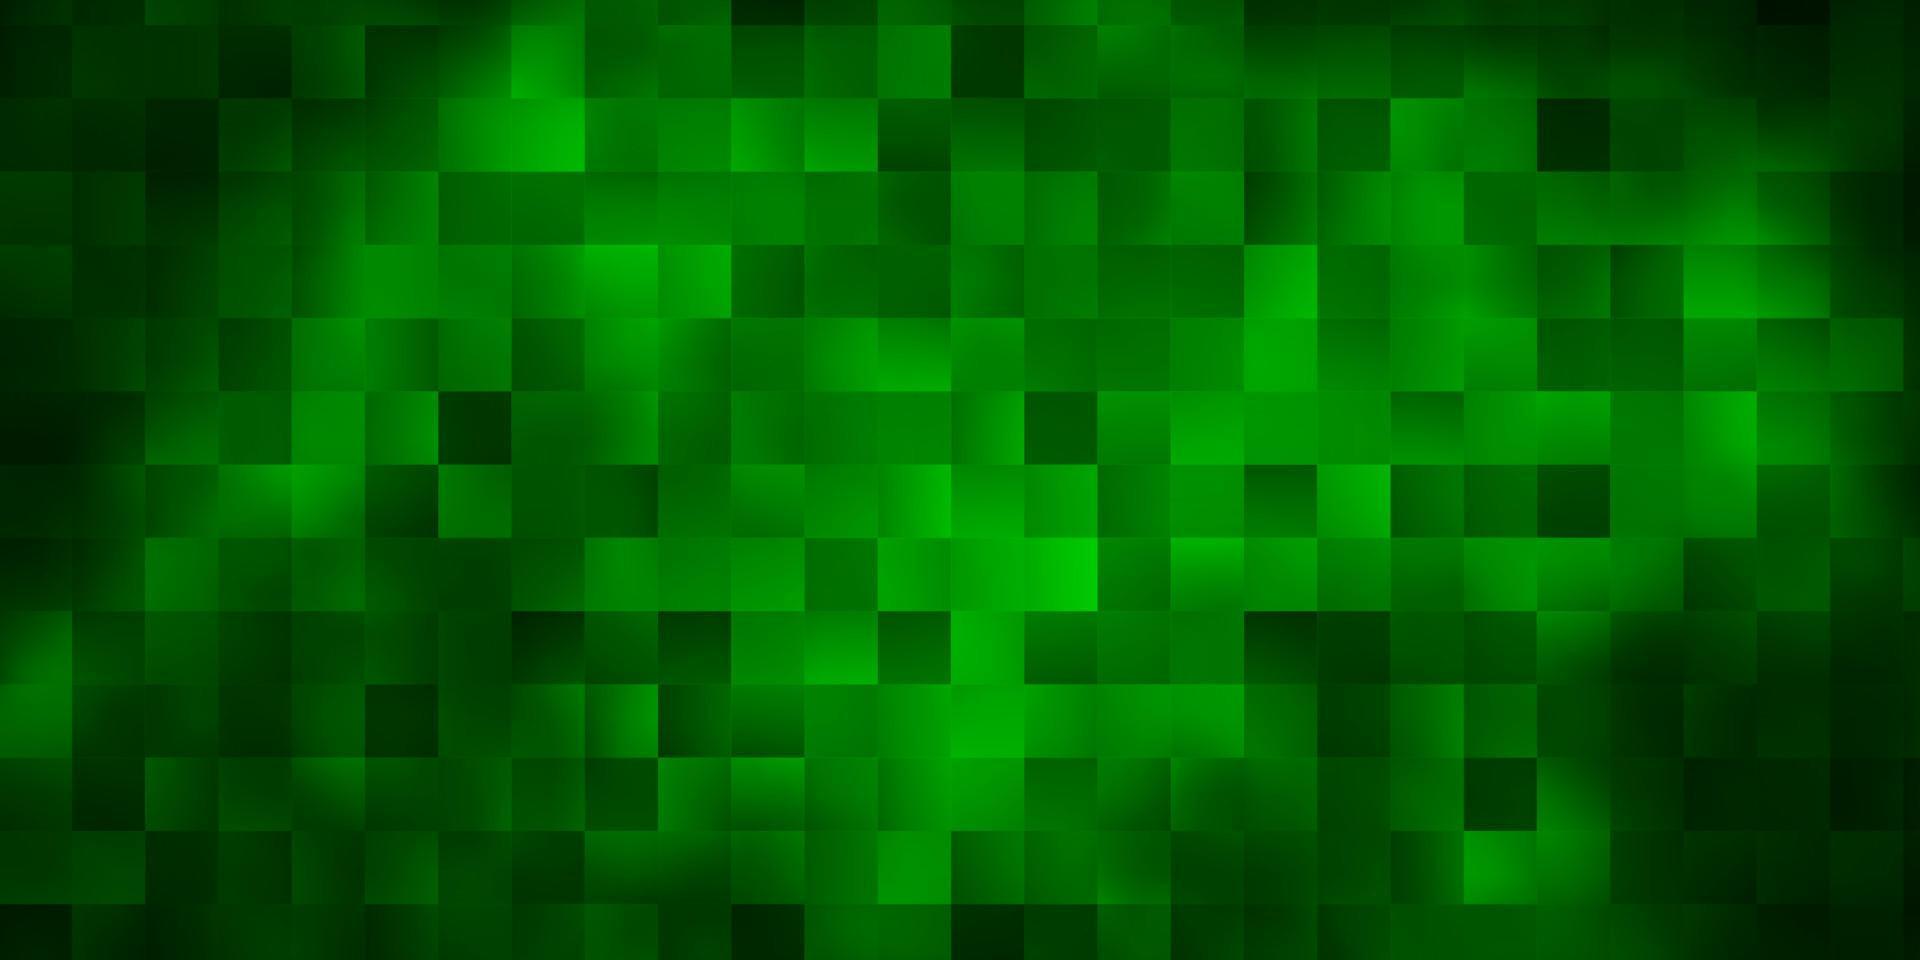 sfondo vettoriale verde scuro in stile poligonale.